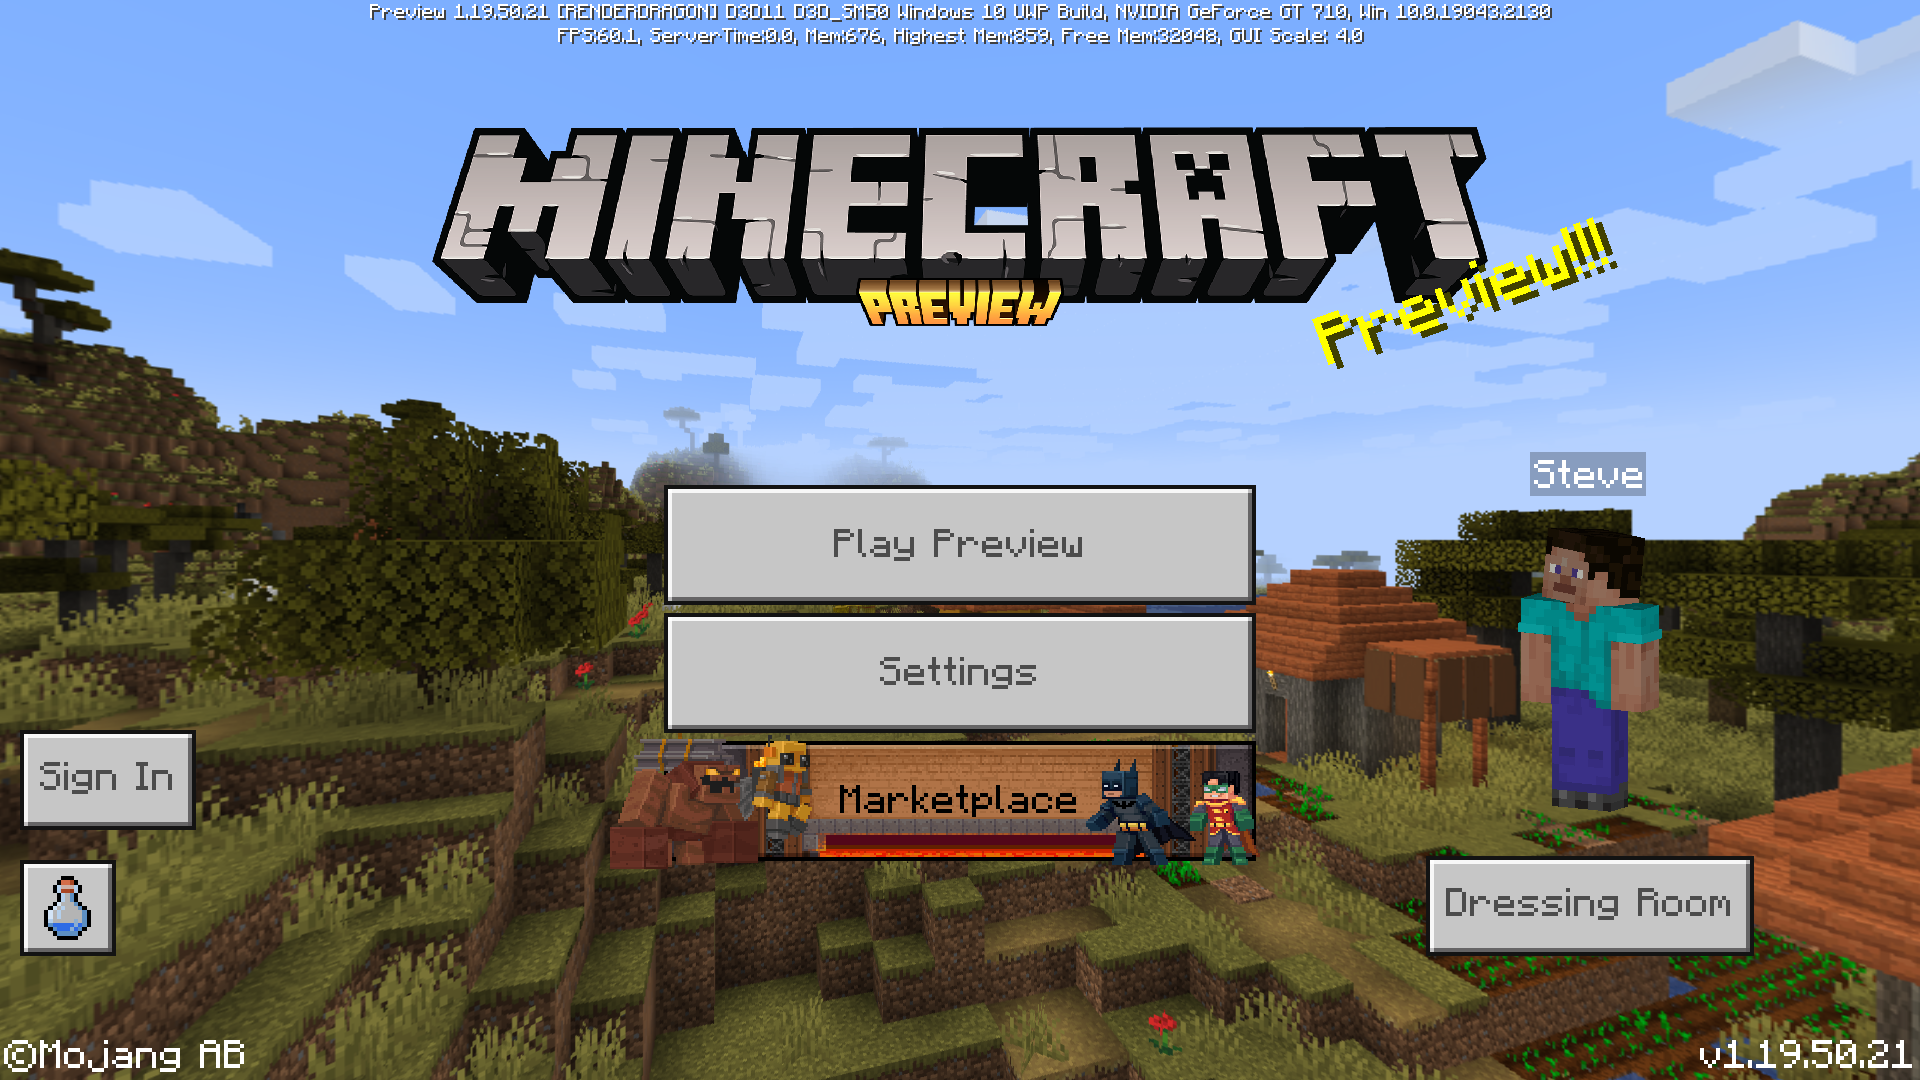 Download Minecraft PE 1.19.50.20 apk free: Wild Update